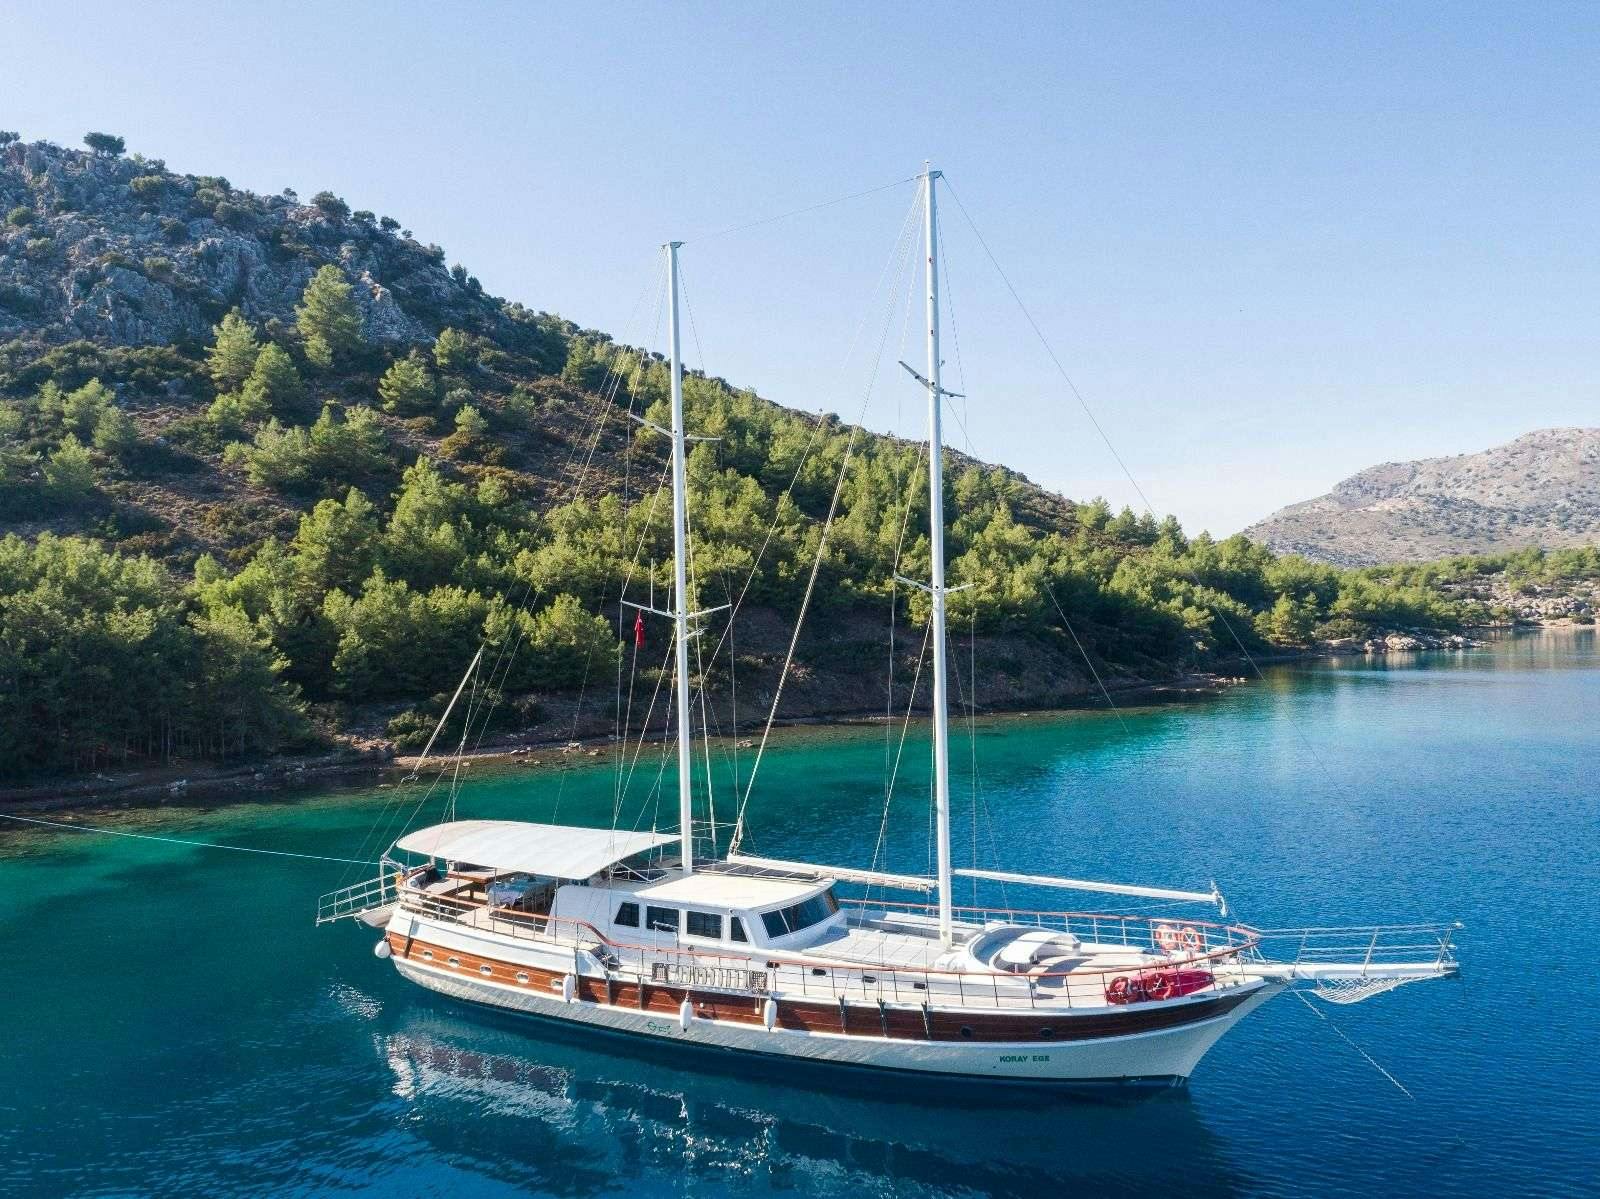 koray ege - Boat hire worldwide & Boat hire in Greece & Turkey 1